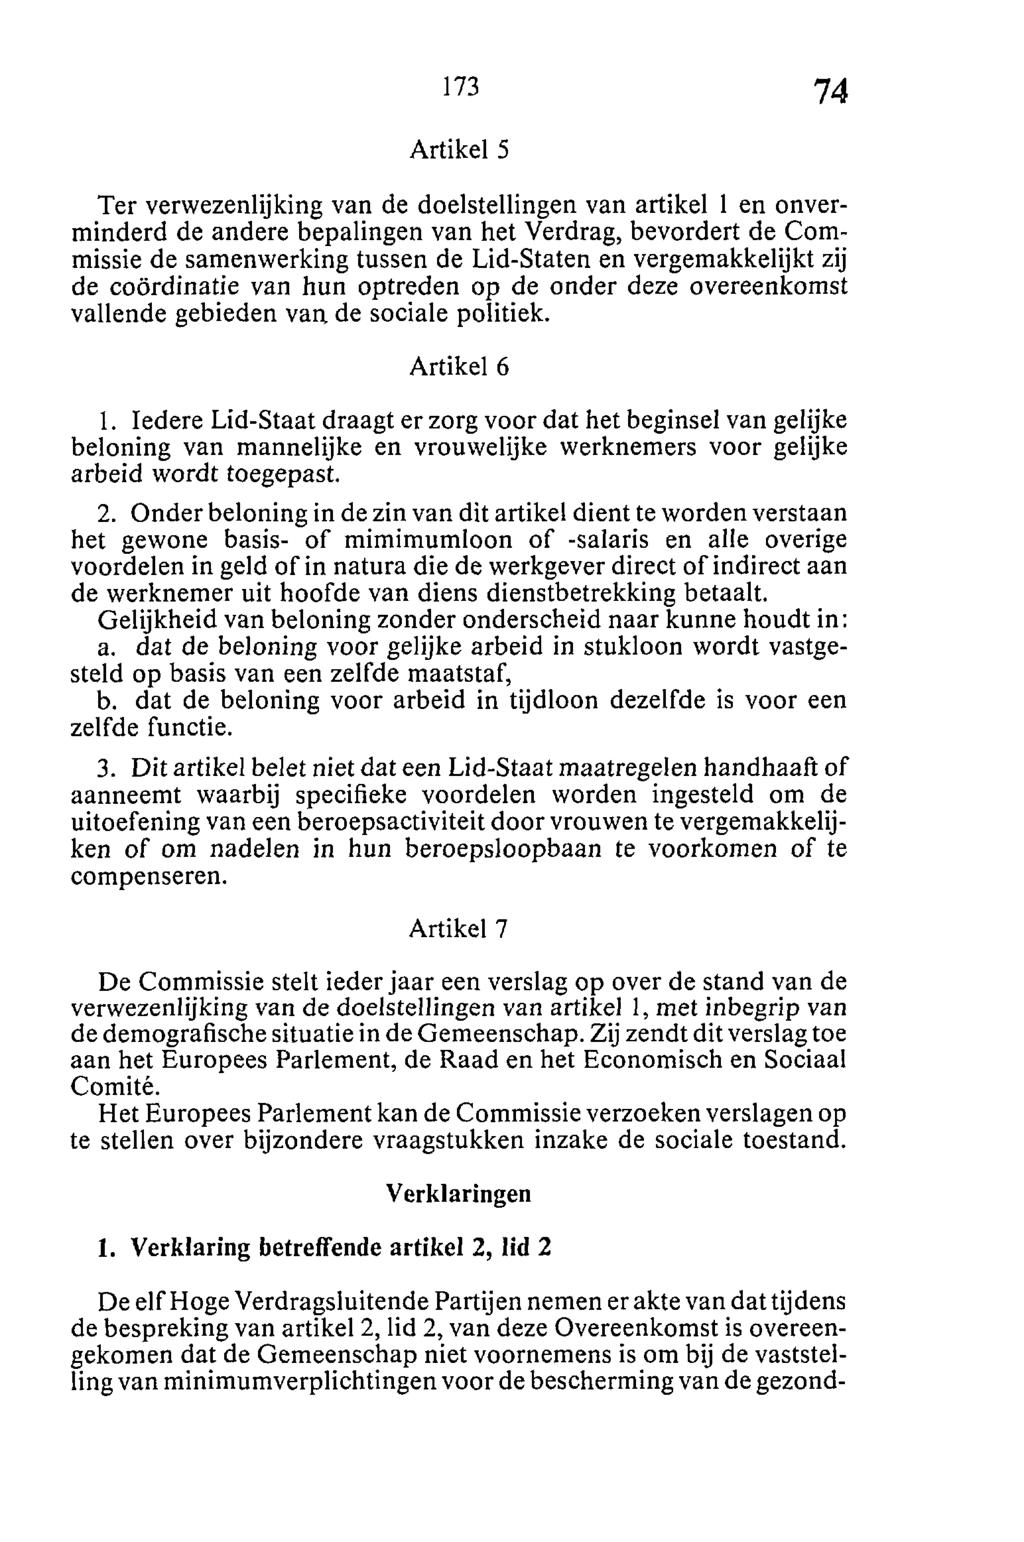 Artikel 5 Ter verwezenlijking van de doelstellingen van artikel 1 en onverminderd de andere bepalingen van het Verdrag, bevordert de Commissie de samenwerking tussen de Lid-Staten en vergemakkelijkt